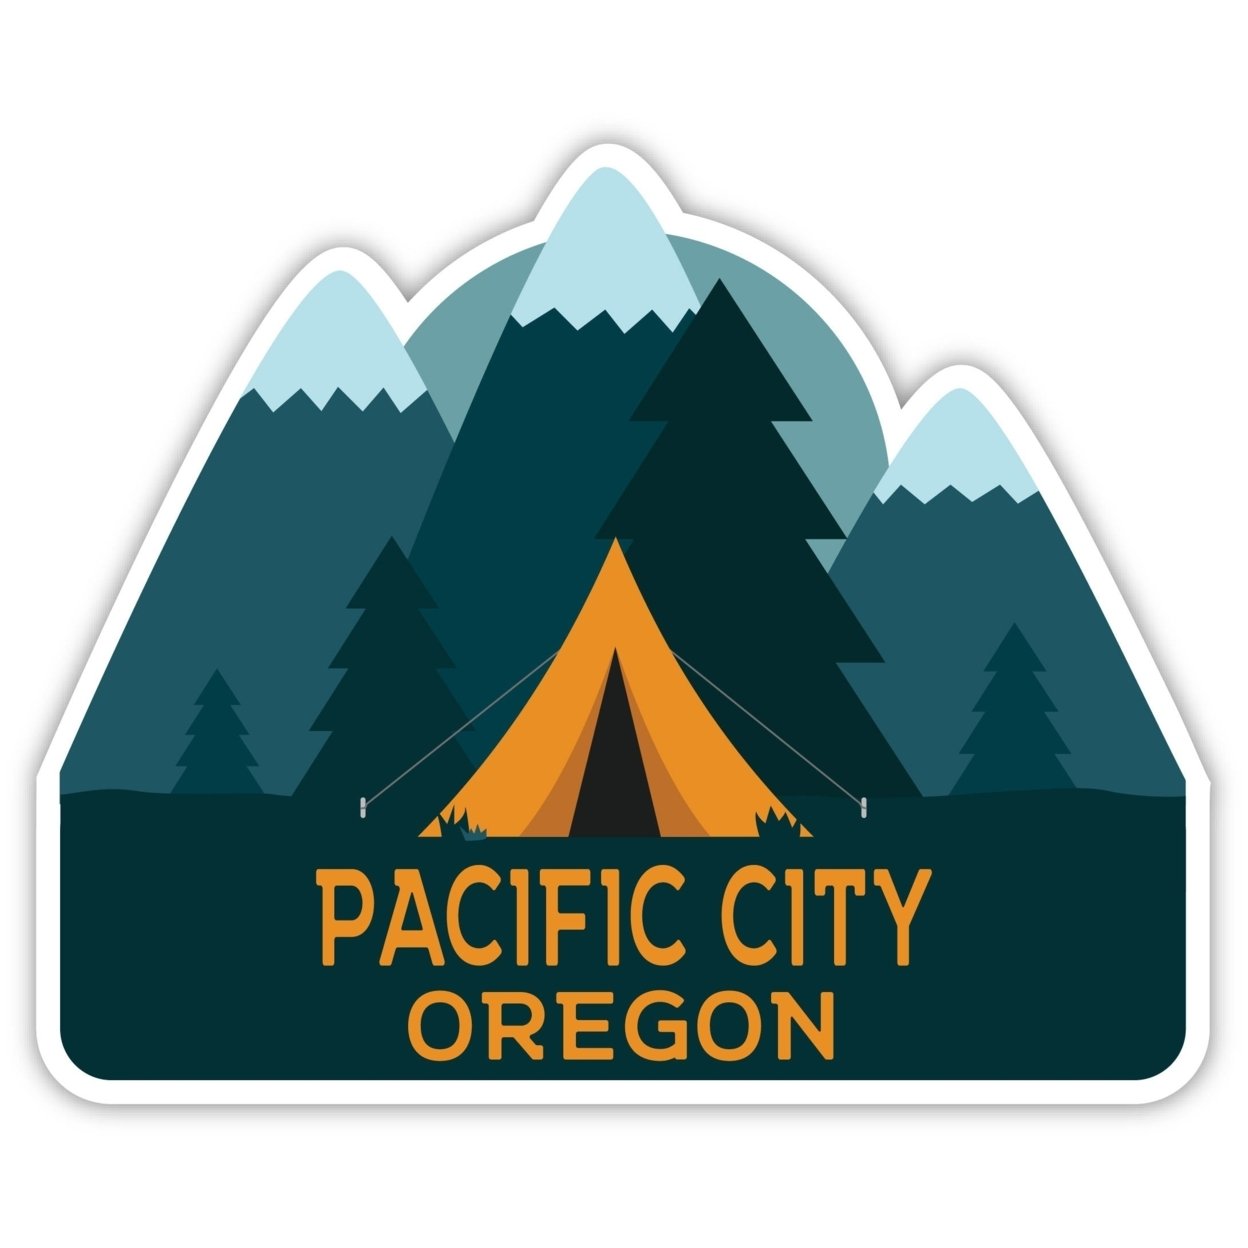 Pacific City Oregon Souvenir Decorative Stickers (Choose Theme And Size) - Single Unit, 4-Inch, Tent